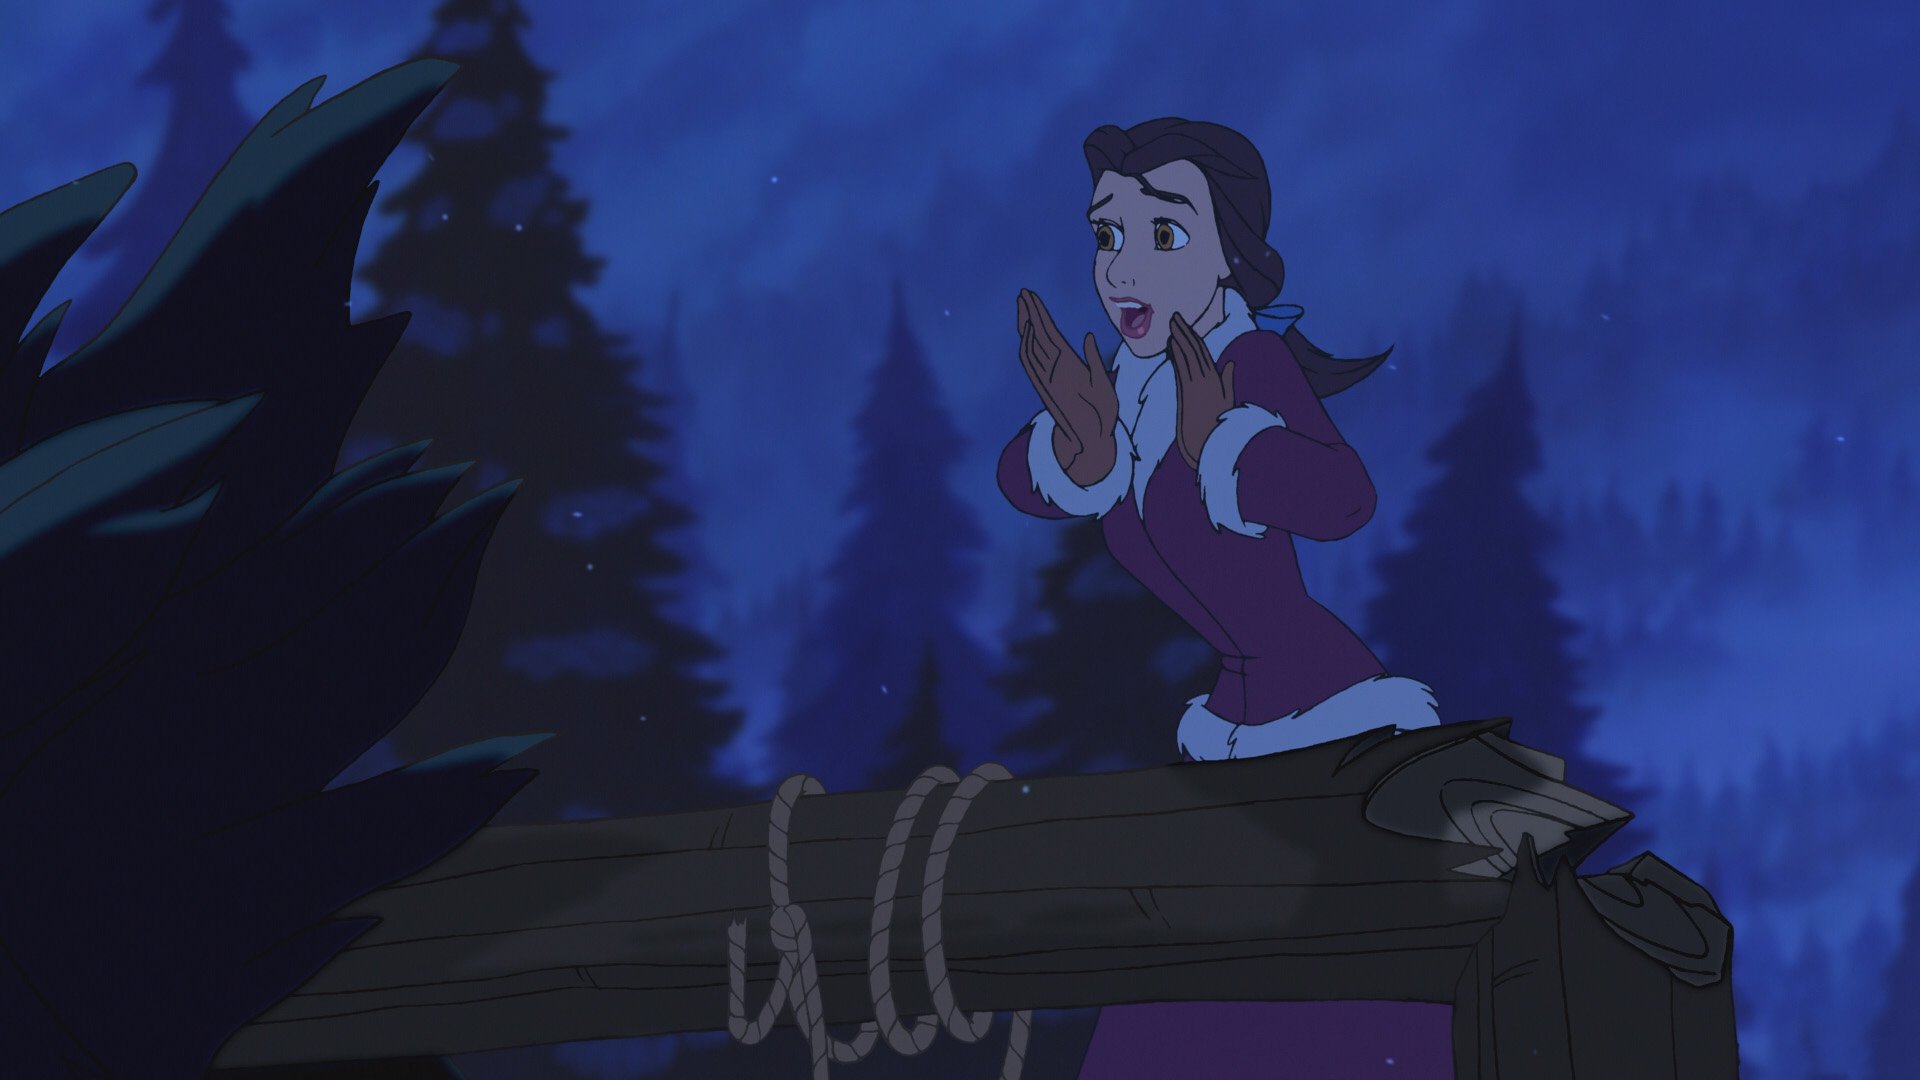 მზეთუნახავი და ურჩხული: ჯადოსნური შობა / Beauty and the Beast: The Enchanted Christmas ქართულად